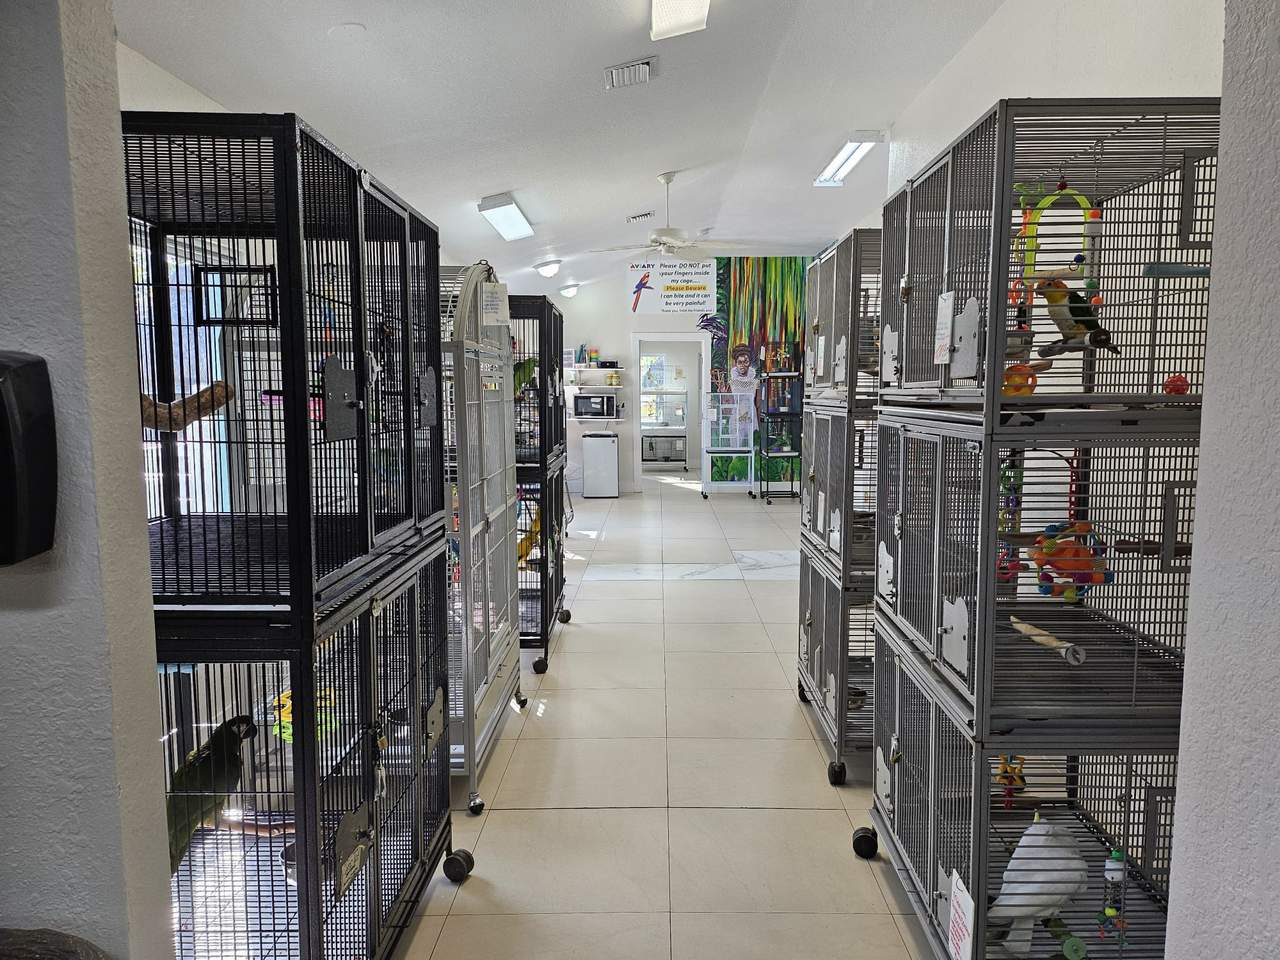 Aviary Bird Shop